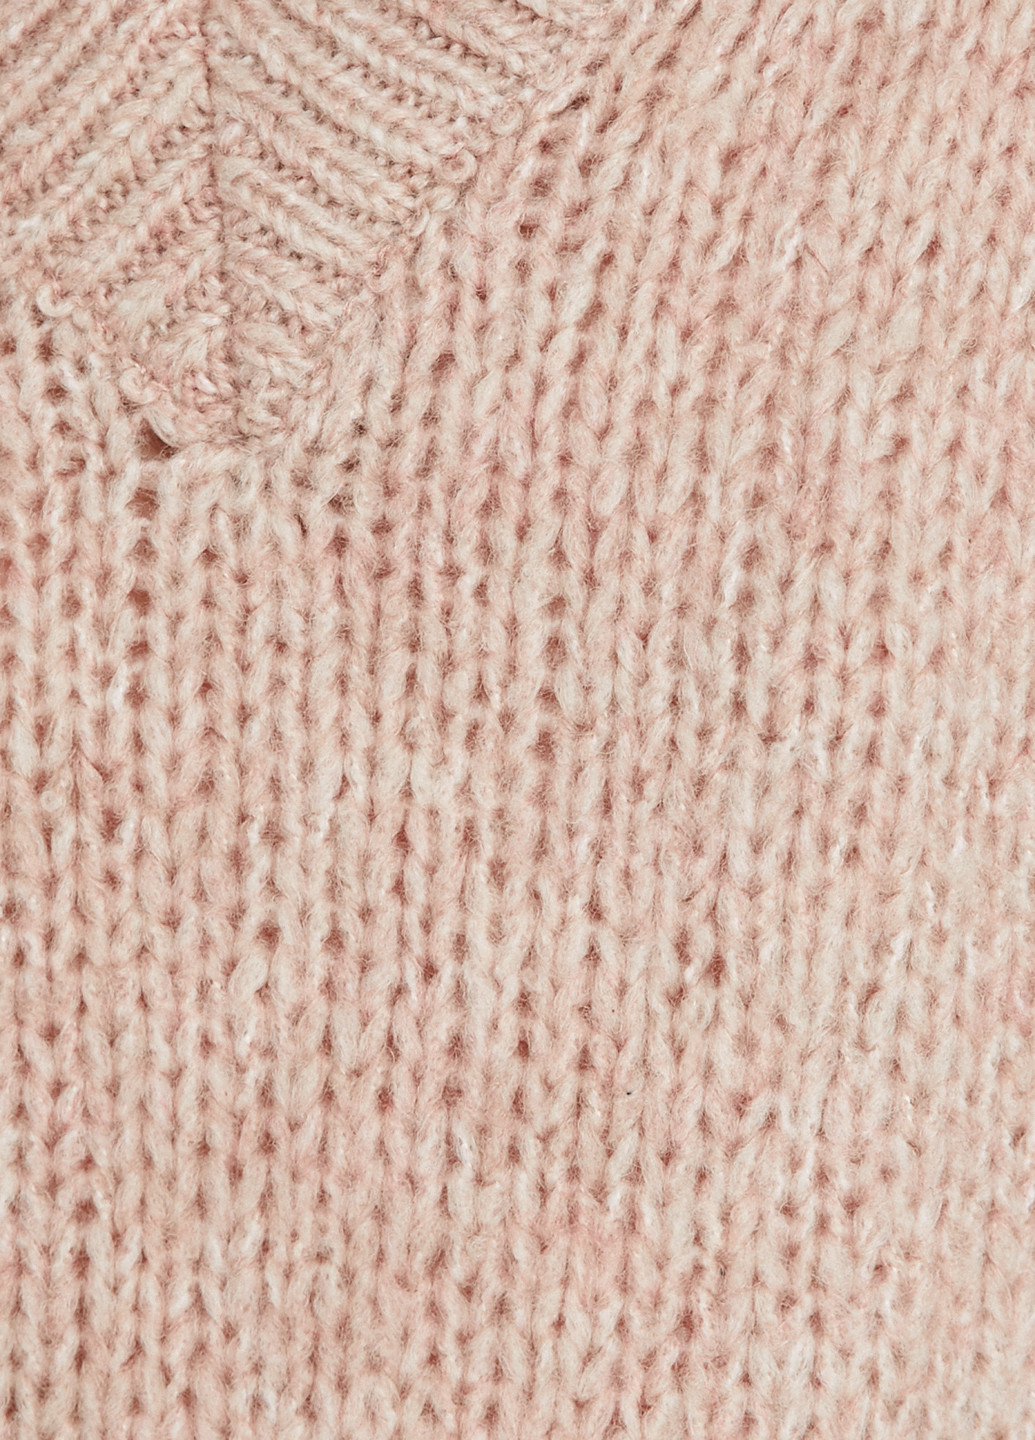 Пудровый демисезонный пуловер пуловер KOTON